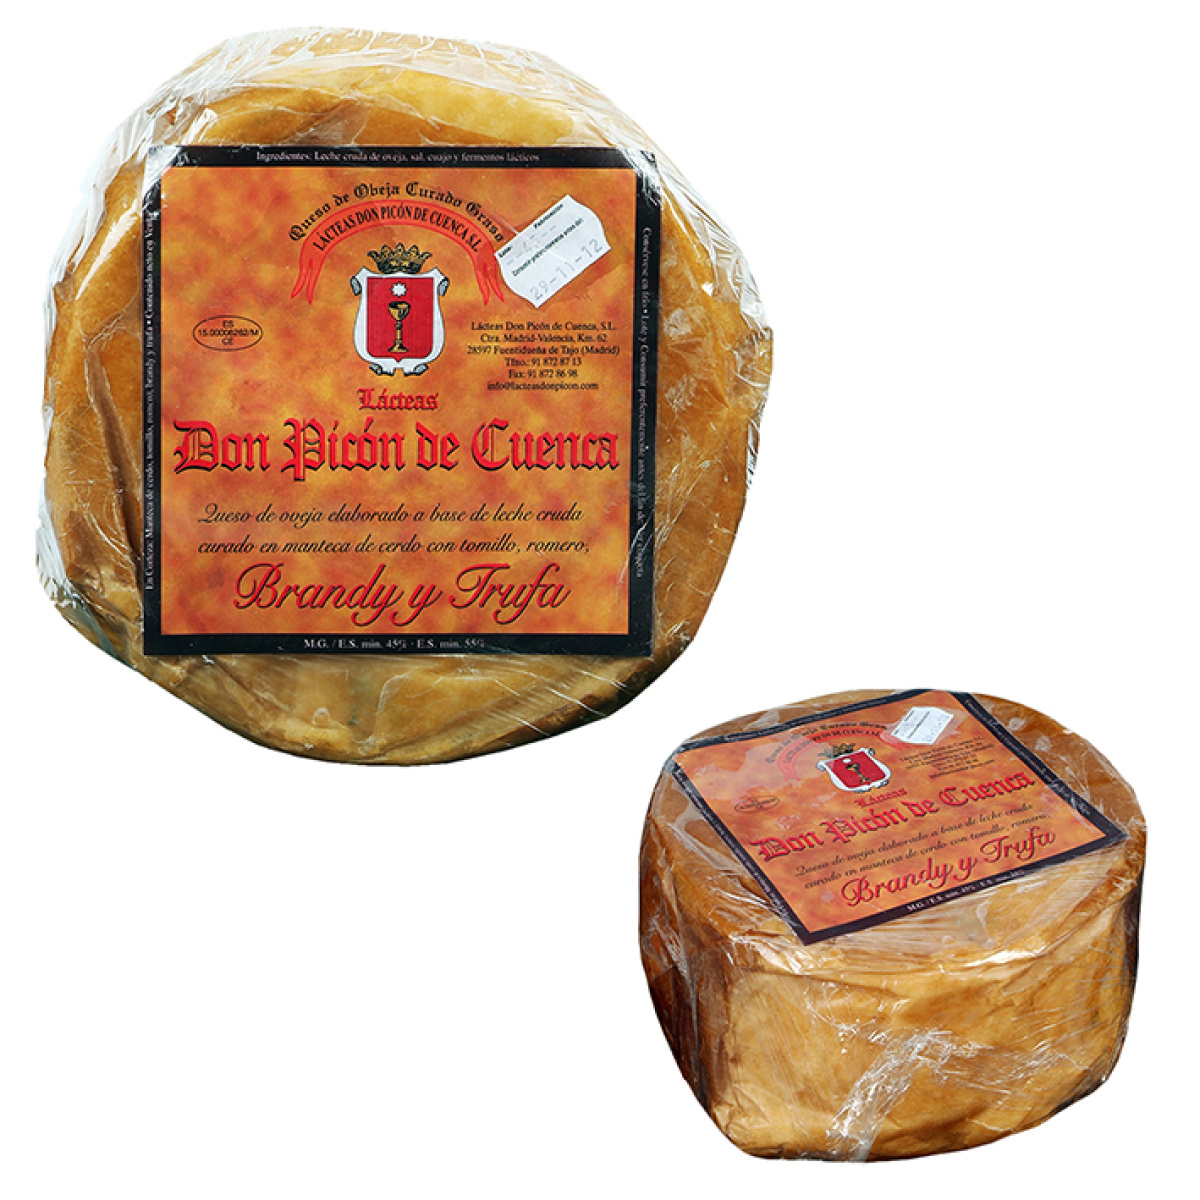  queso don picón de cuenca 3 kg. alimentación donpiconde